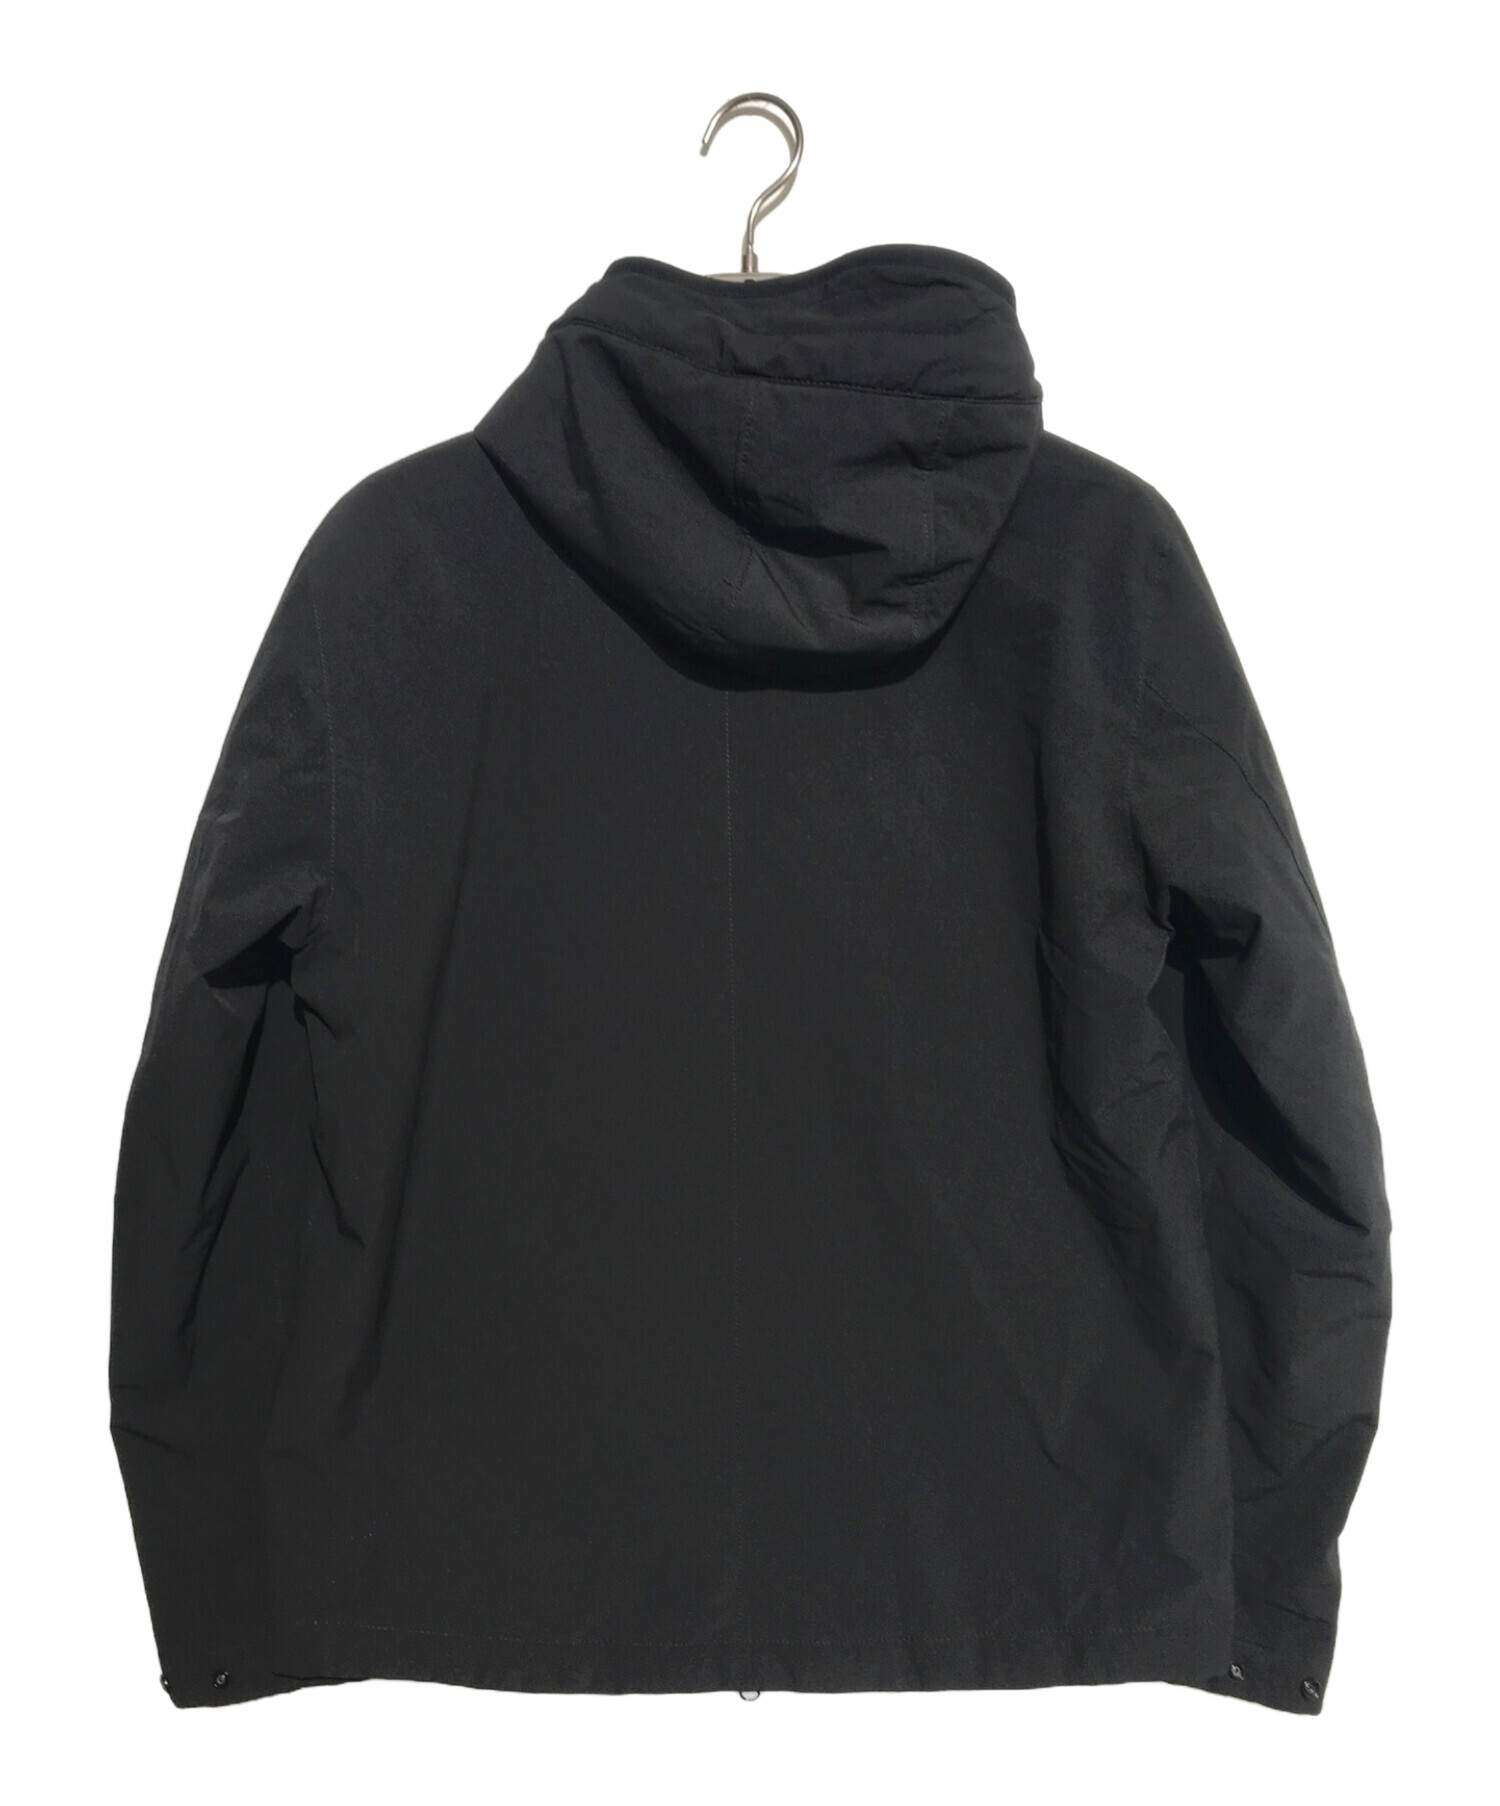 STONE ISLAND (ストーンアイランド) プリマロフトジャケット ブラック サイズ:M